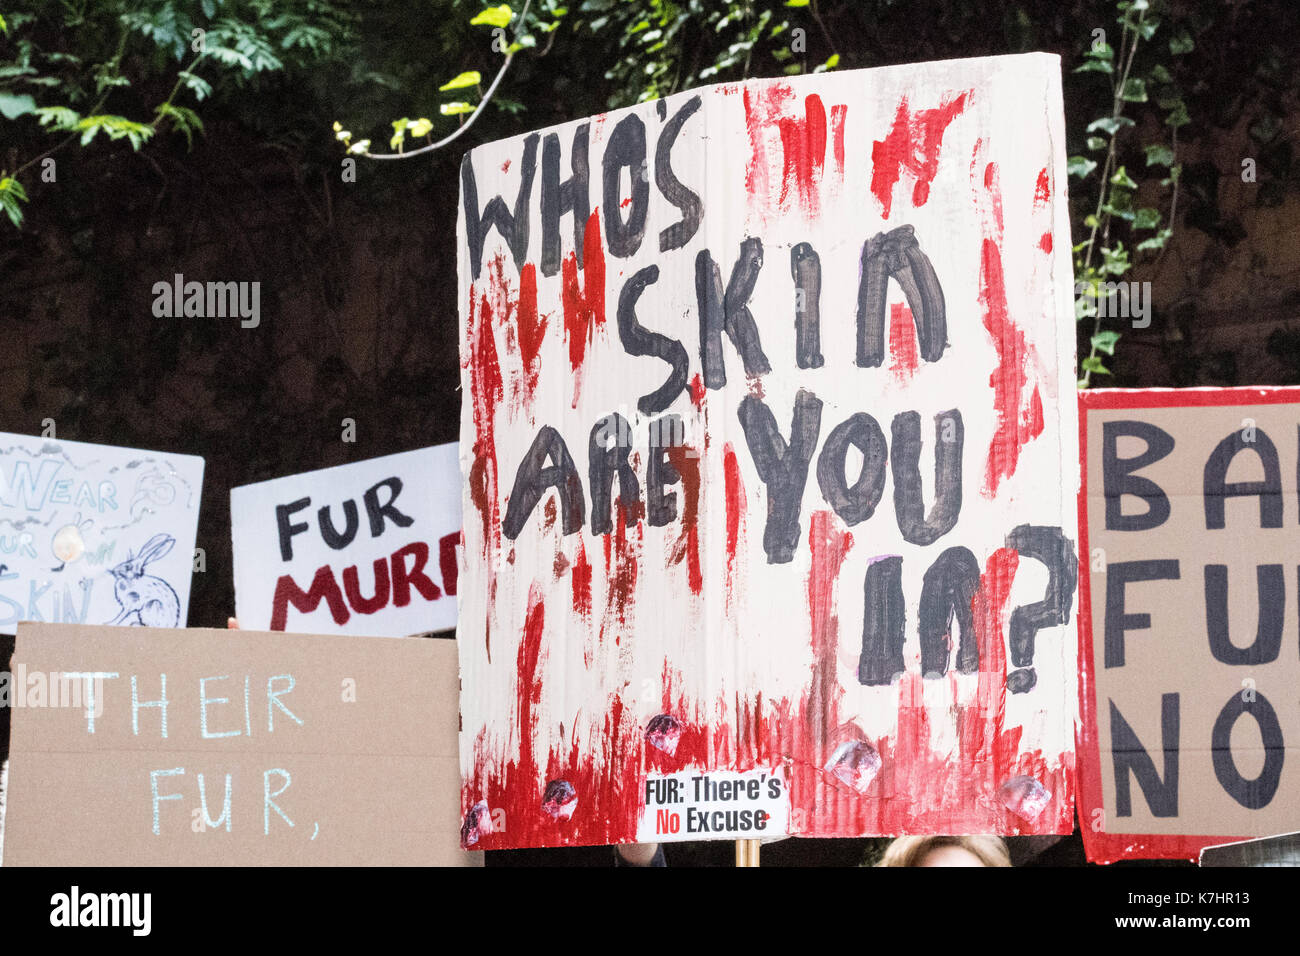 Londres, 16 de septiembre de 2017, manifestantes anti pieles el piquete de Gareth Pugh lfw17 presentación en el BFI imax crédito: Ian Davidson/alamy live news Foto de stock